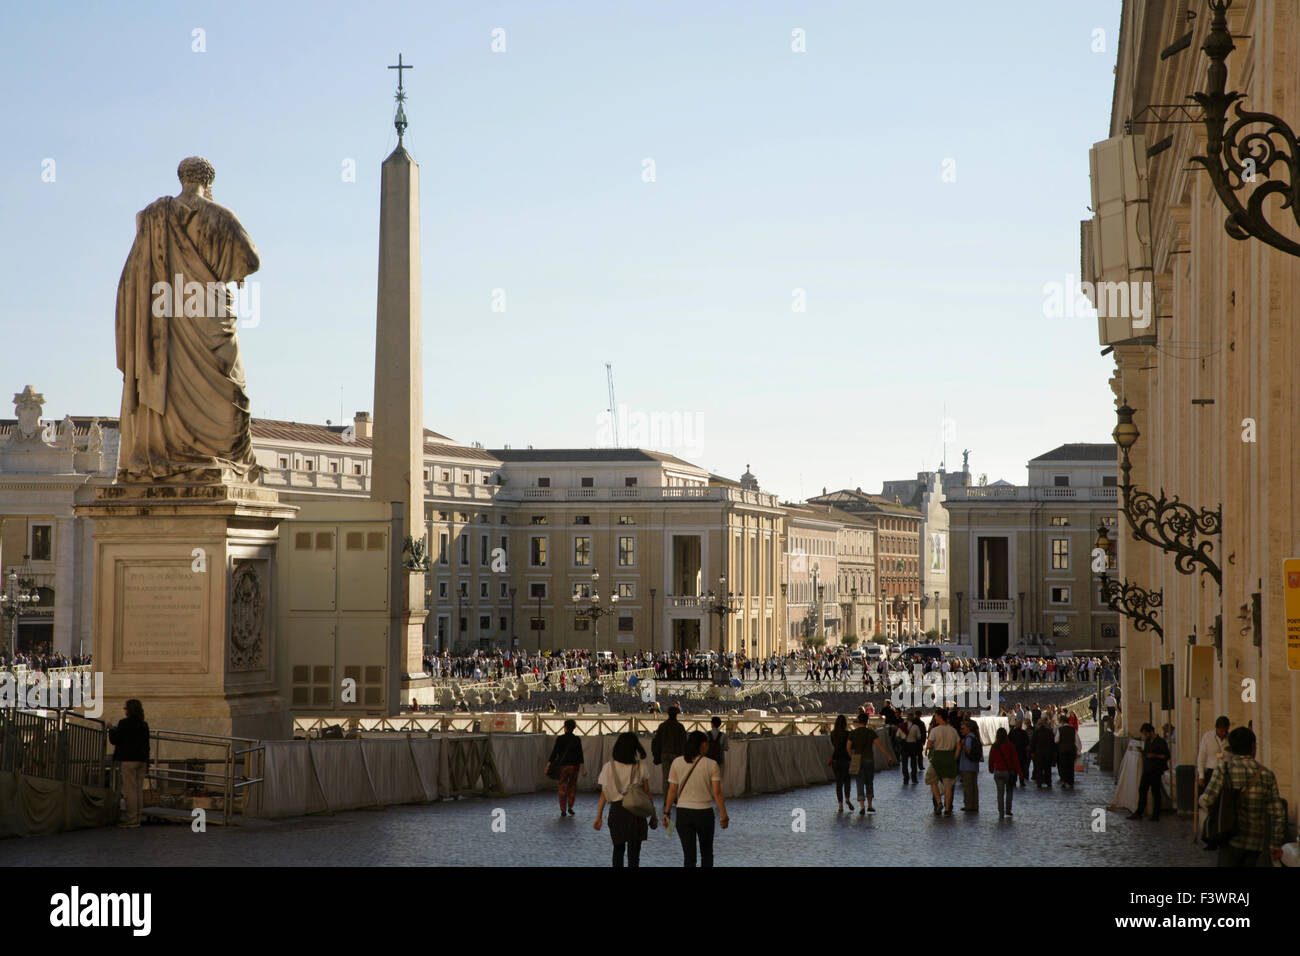 Les touristes dans la Piazza San Pietro, Vatican, Rome, Italie. Banque D'Images